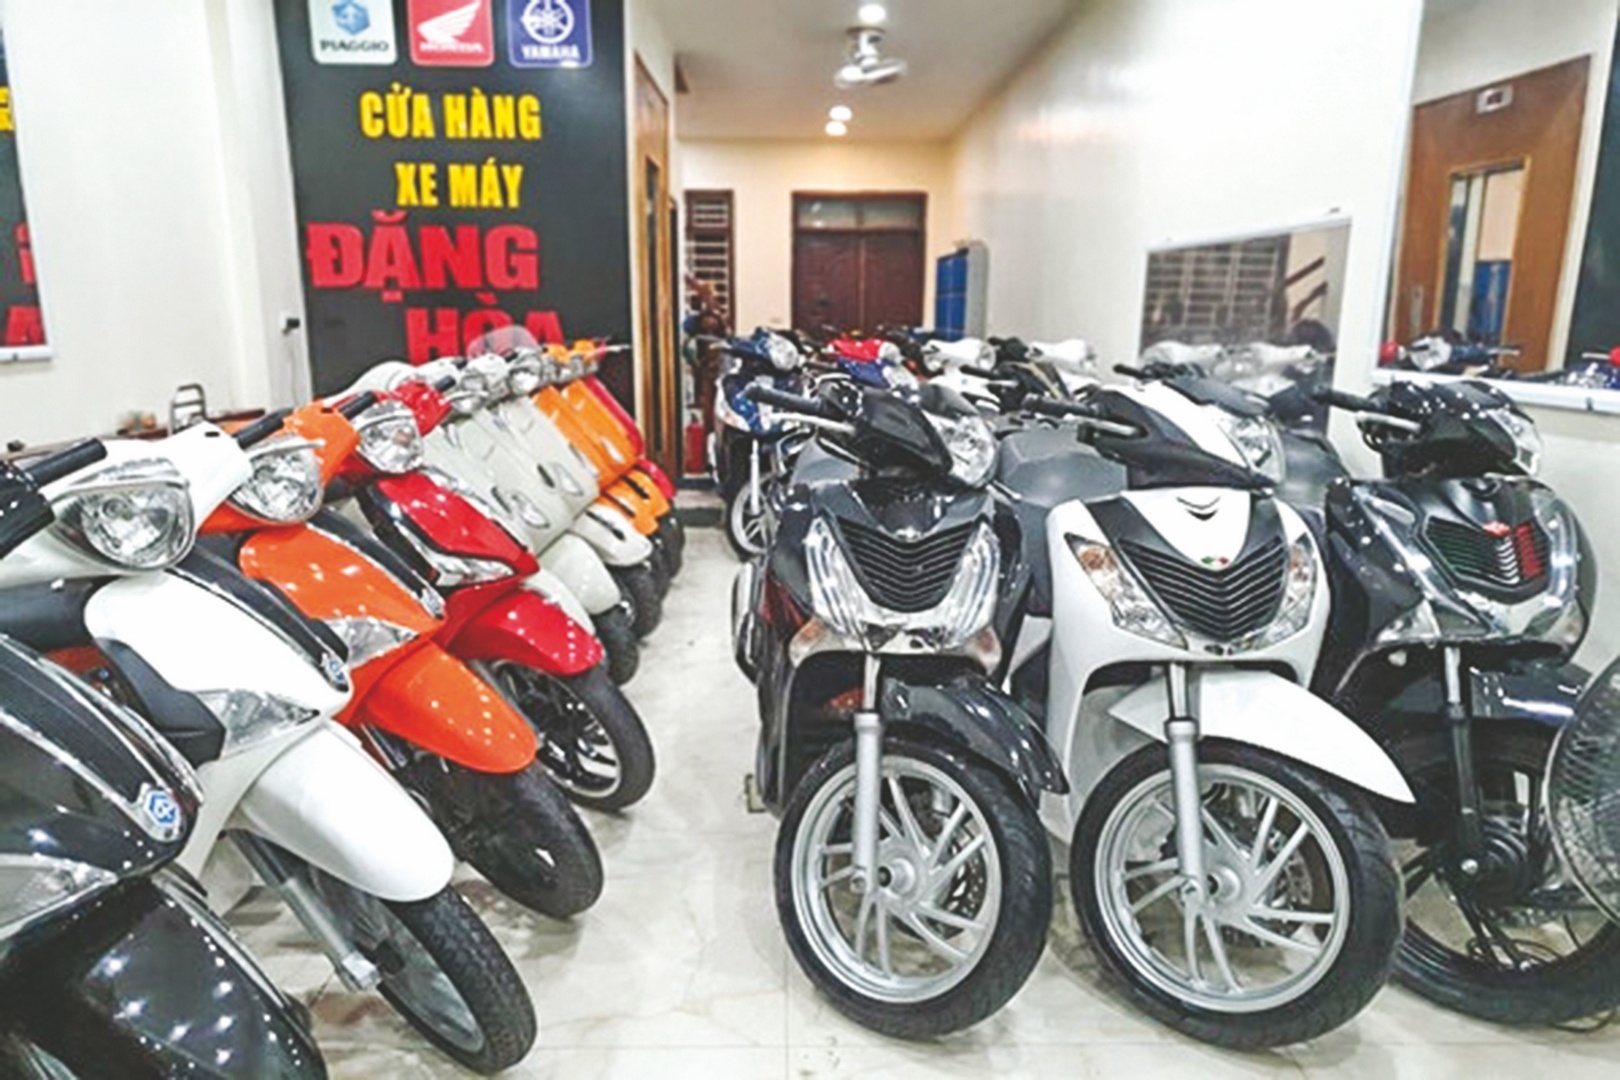 Cửa hàng chuyên mua bán trao đổi các loại xe máy cũ  2banhvn